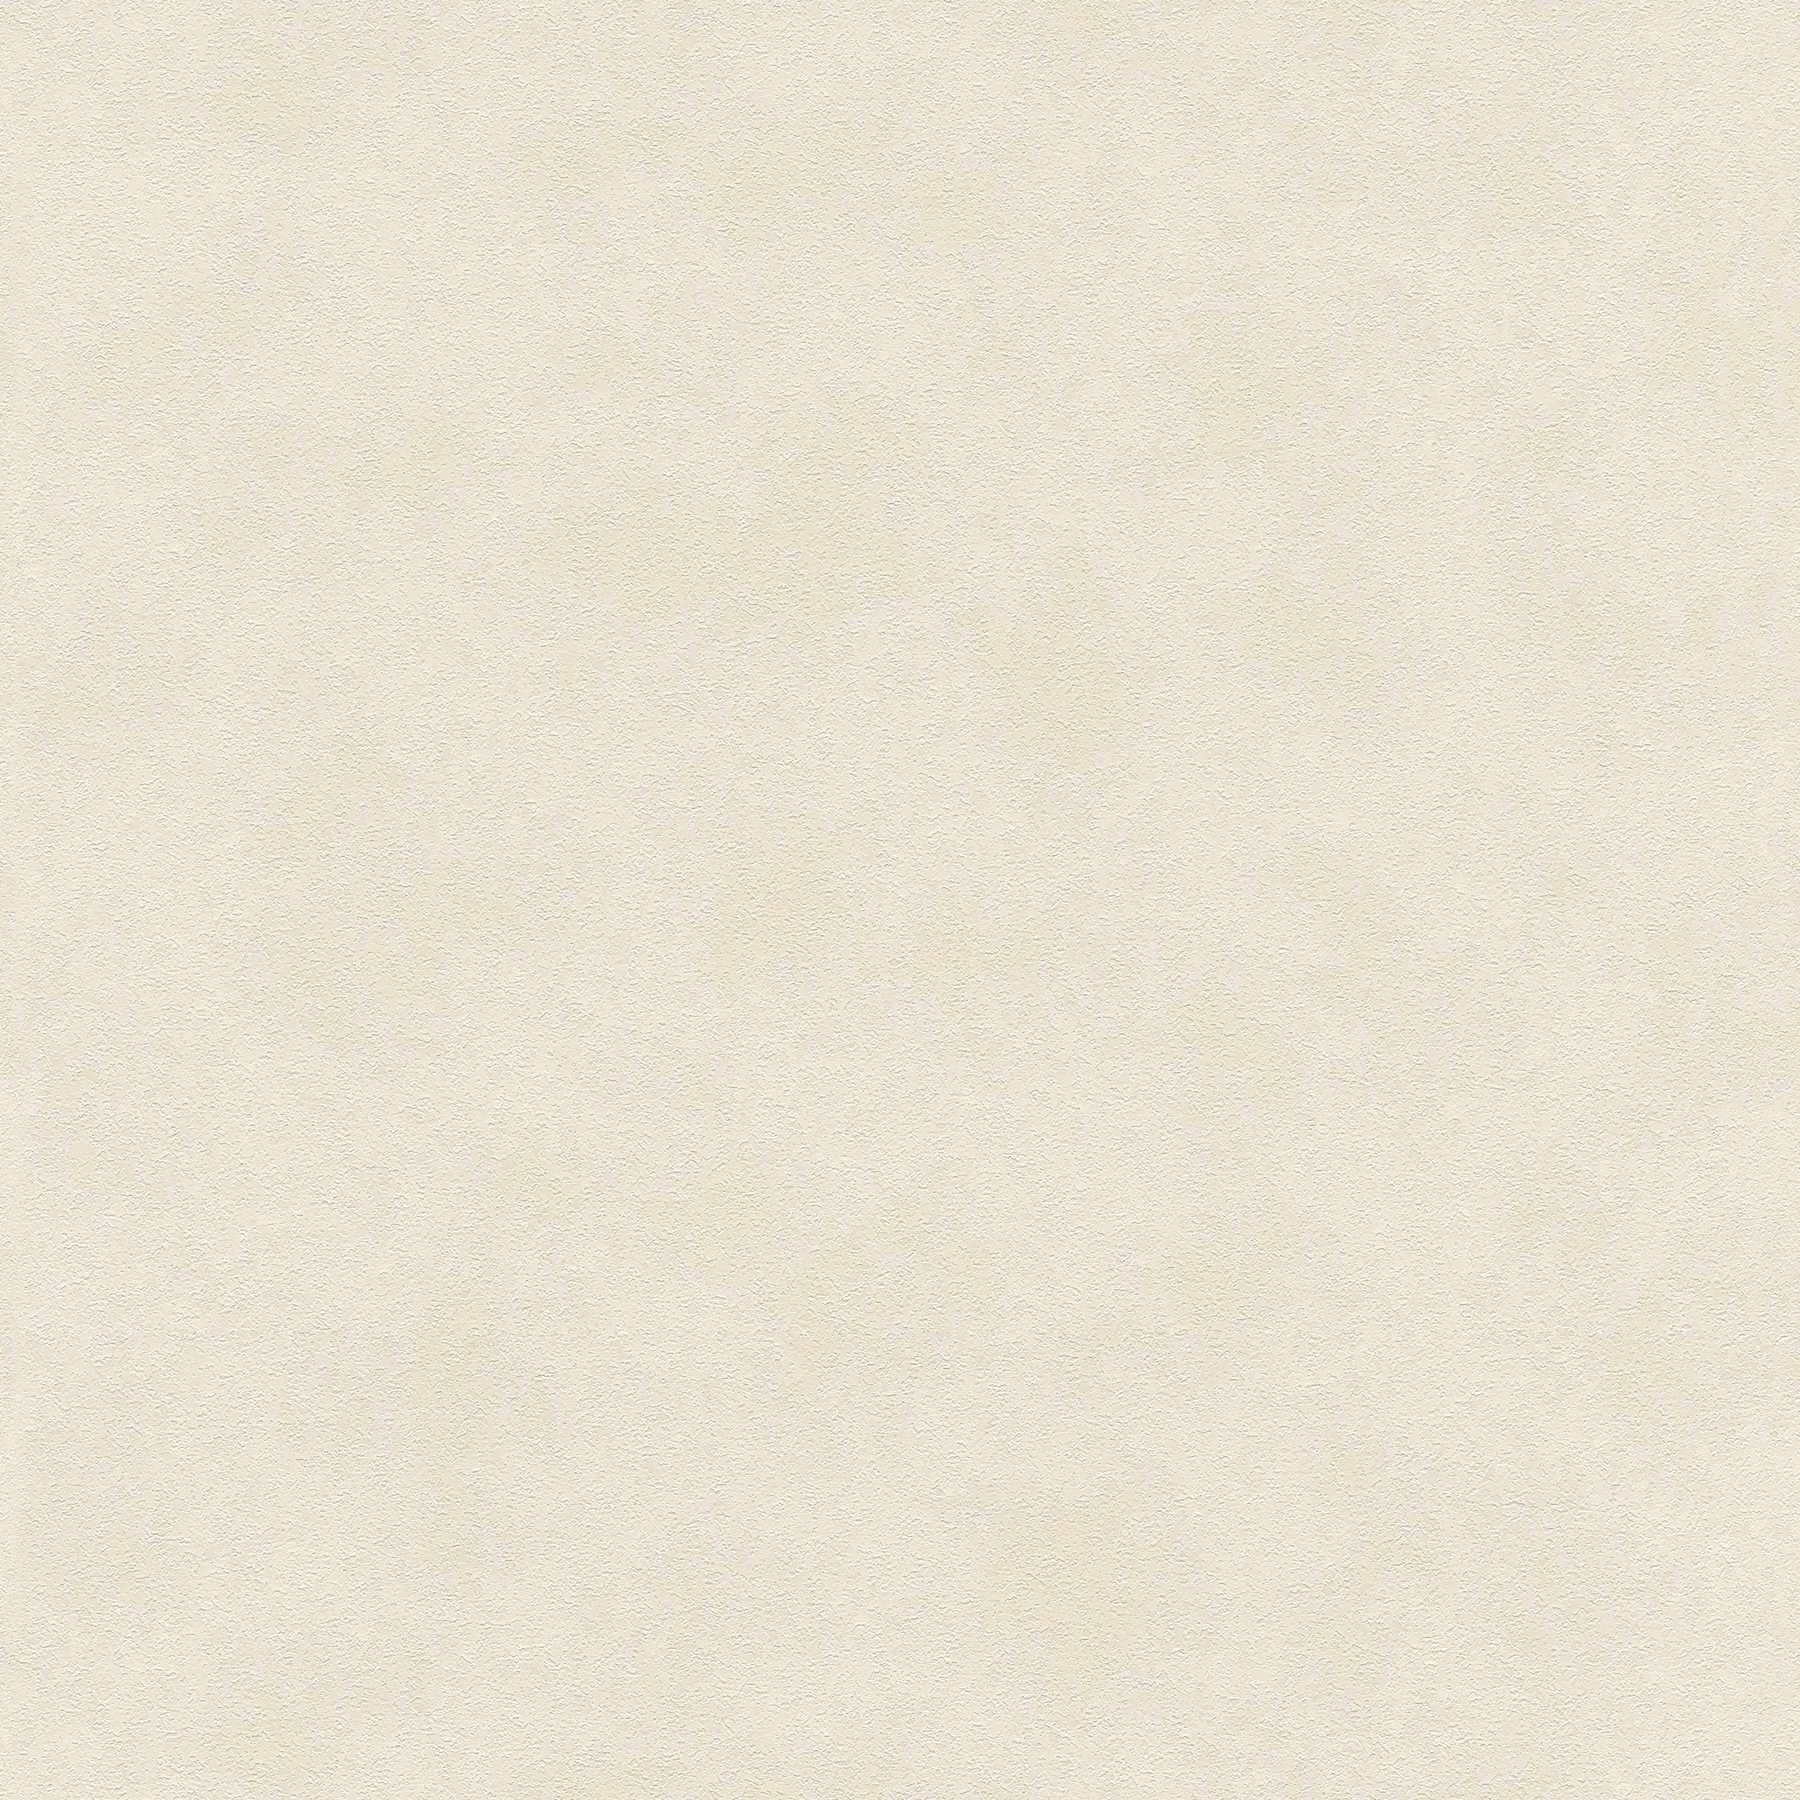 papier peint crème-beige avec effet structuré, uni & satiné
